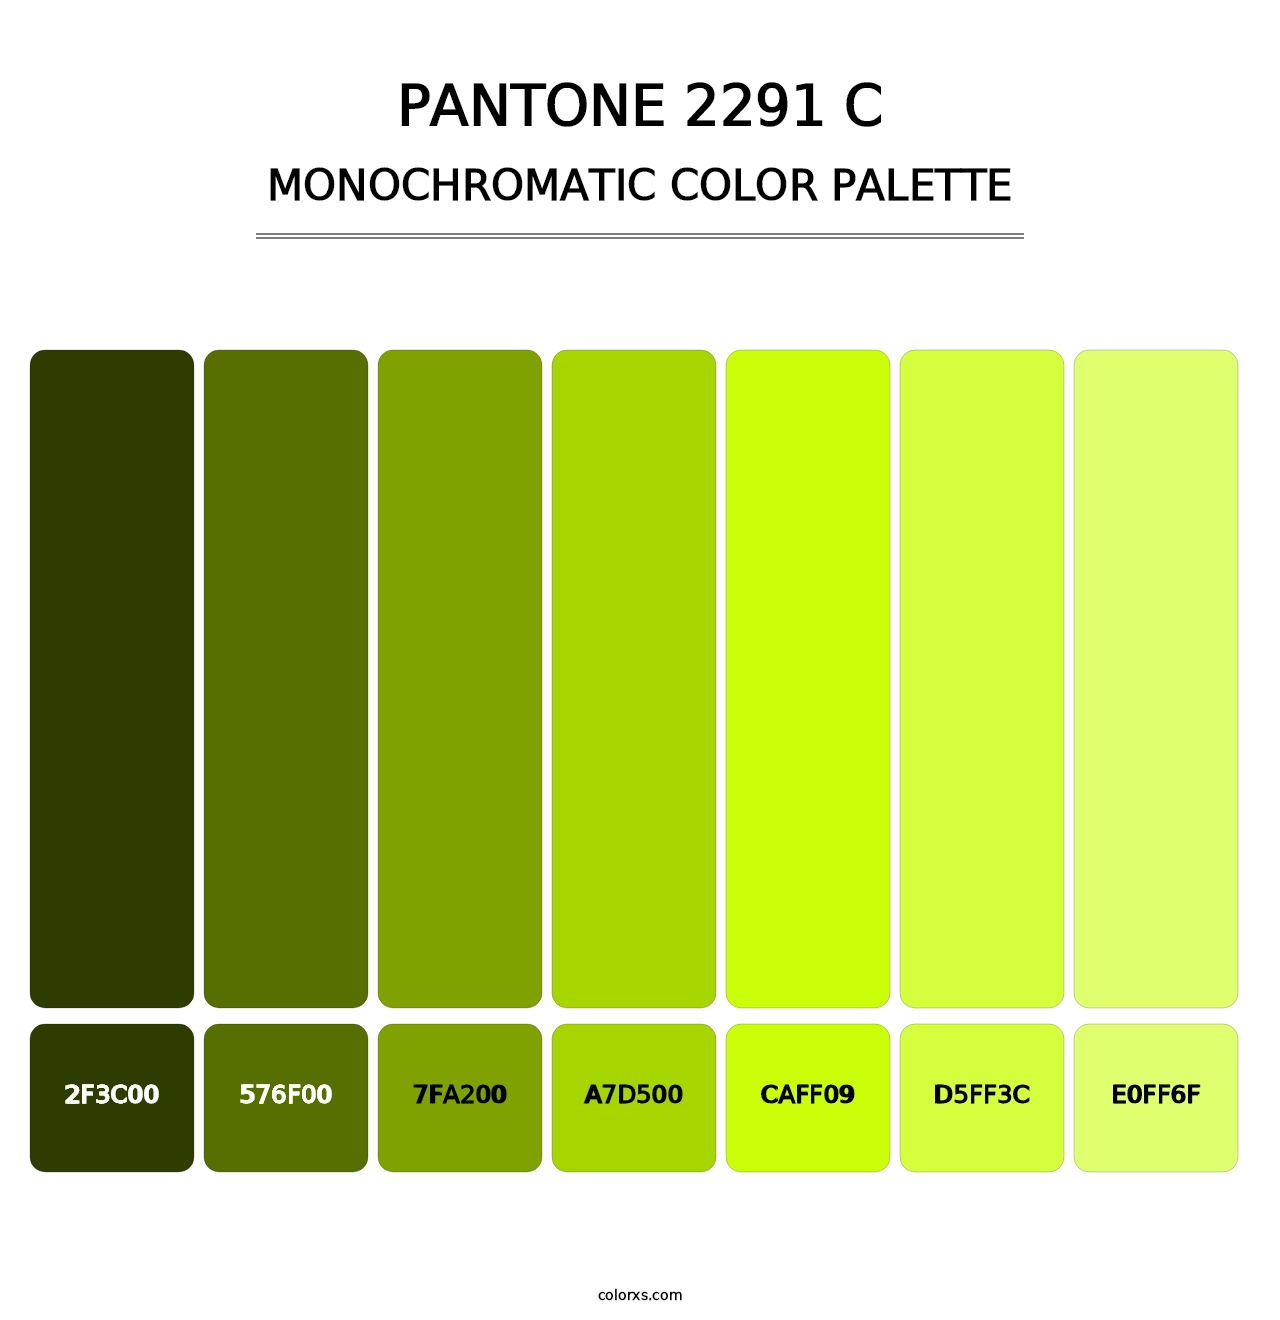 PANTONE 2291 C - Monochromatic Color Palette